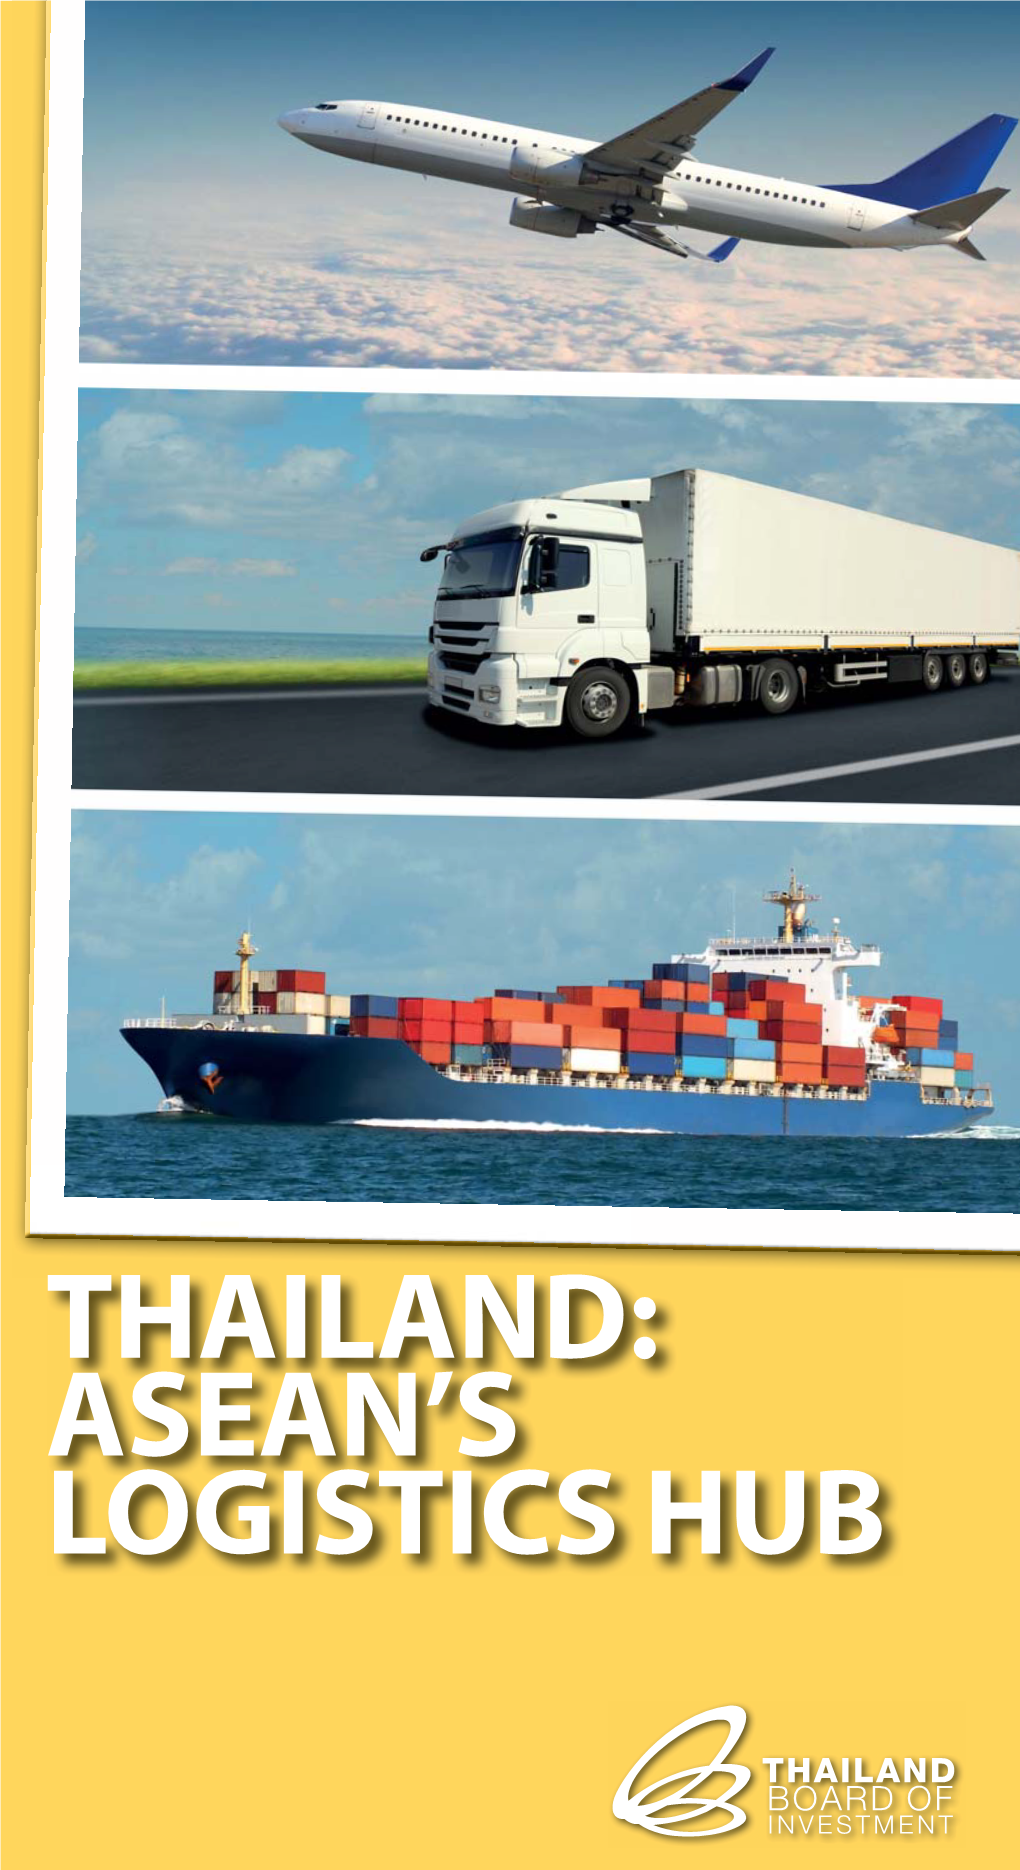 Thailand: Asean's Logistics